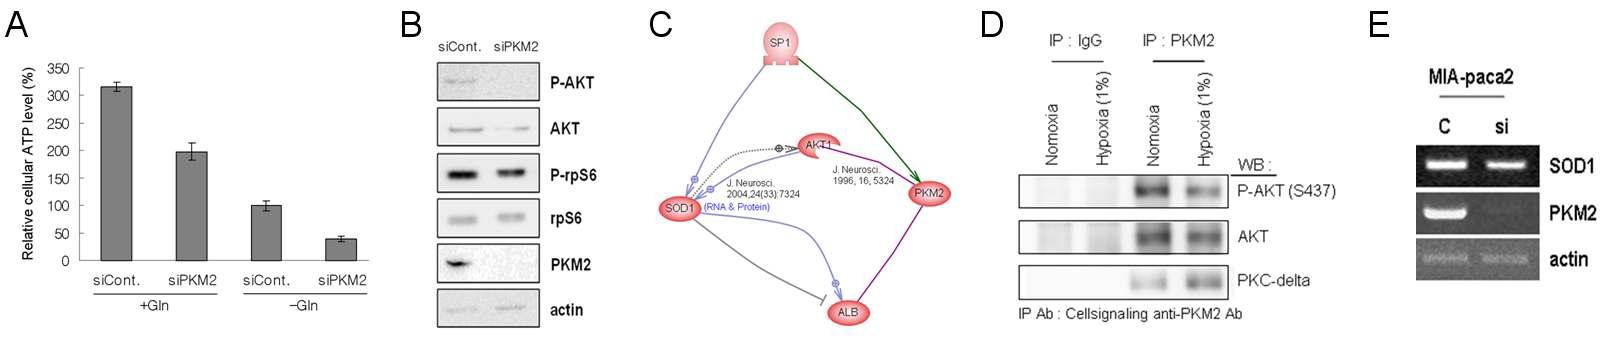 PKM2 knockdown 조건에서 세포 내 ATP 양 감소 및 AKT 활성억제와 이에 따른 ROS scavenger 감소